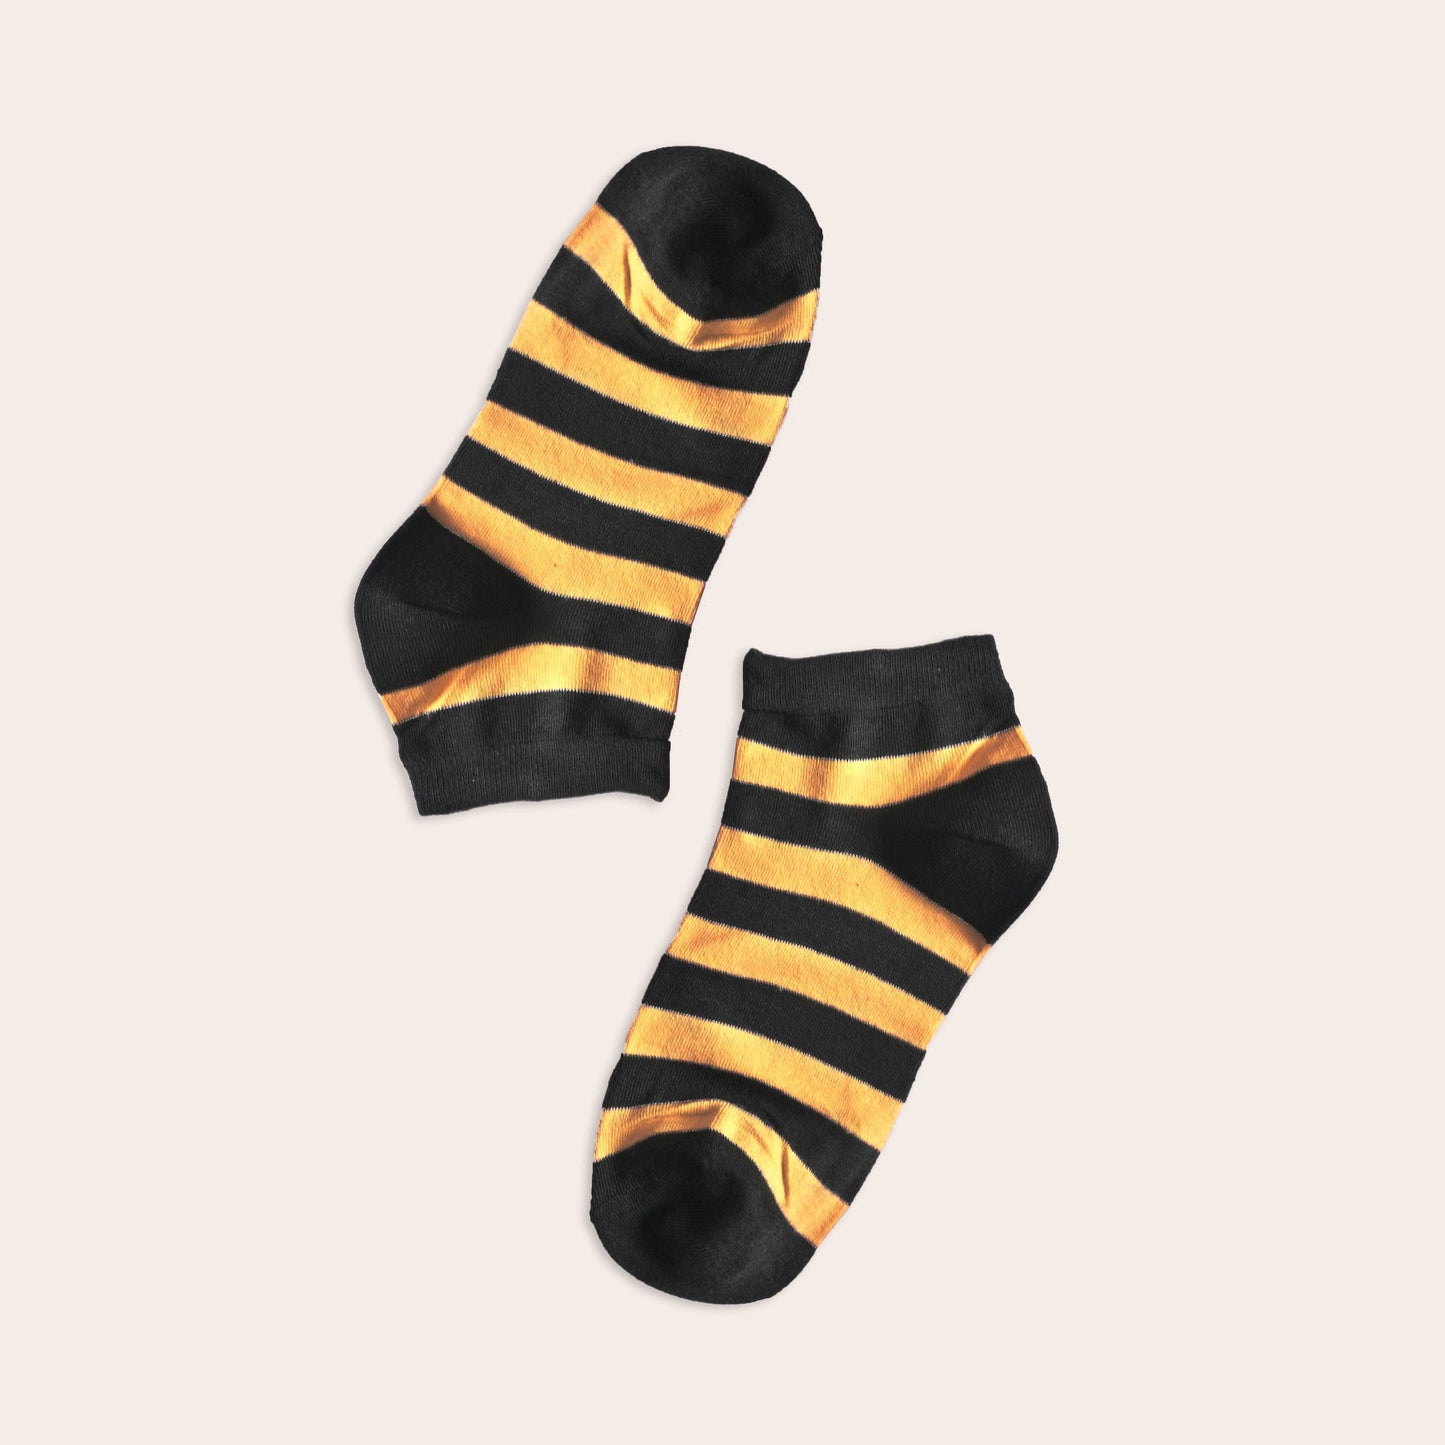 Tlia Men's Fashion Anklet Socks Socks SRL EUR 38-43 Mustard D1